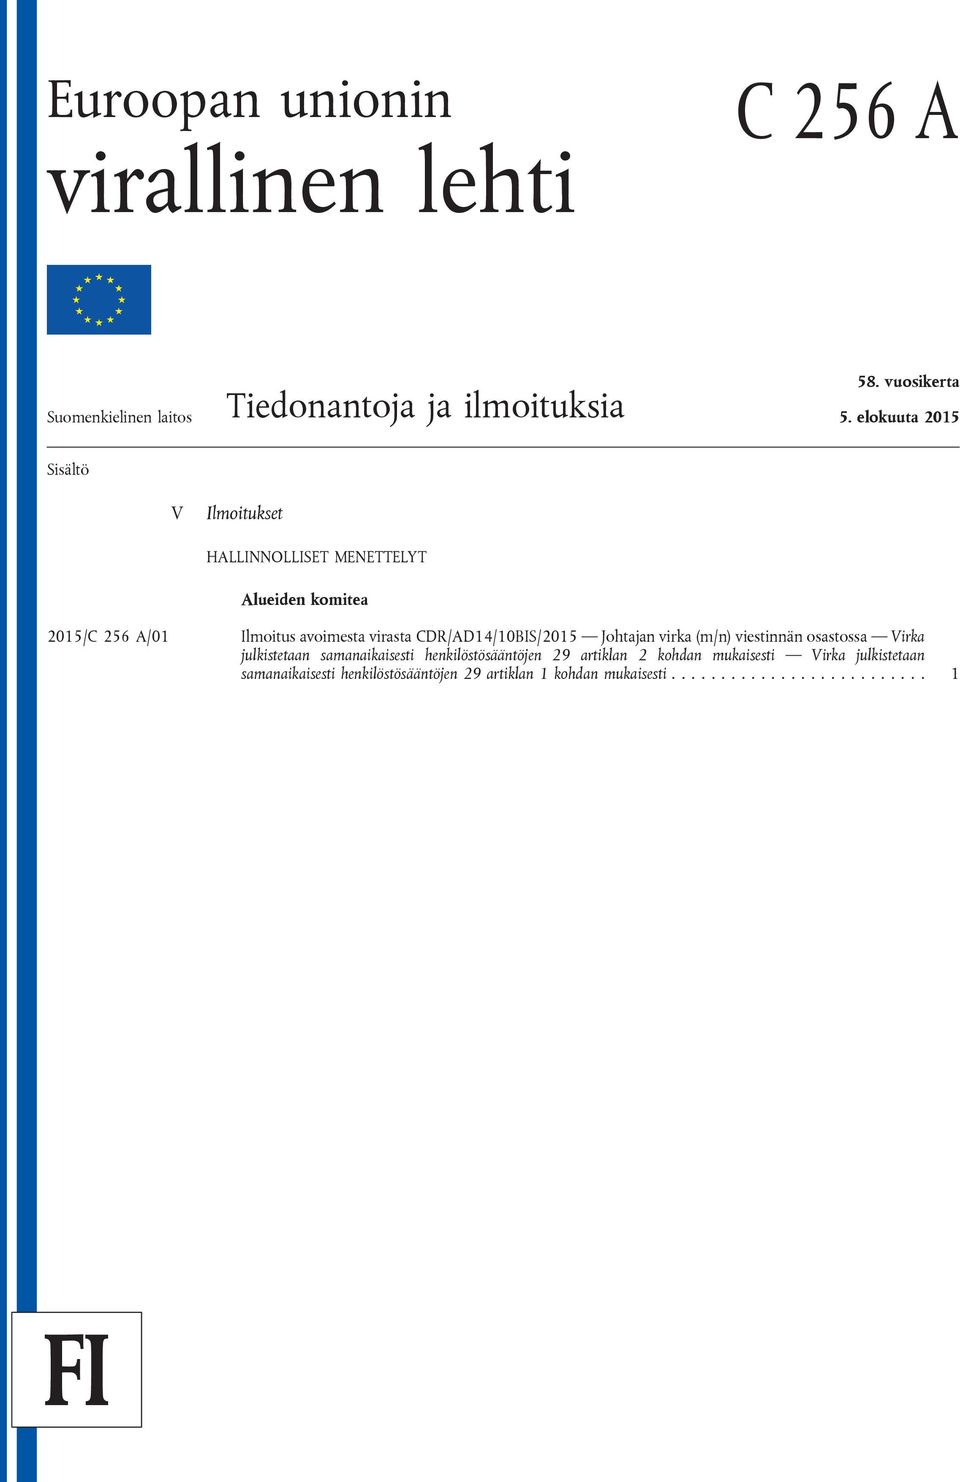 CDR/AD14/10BIS/2015 Johtajan virka (m/n) viestinnän osastossa Virka julkistetaan samanaikaisesti henkilöstösääntöjen 29